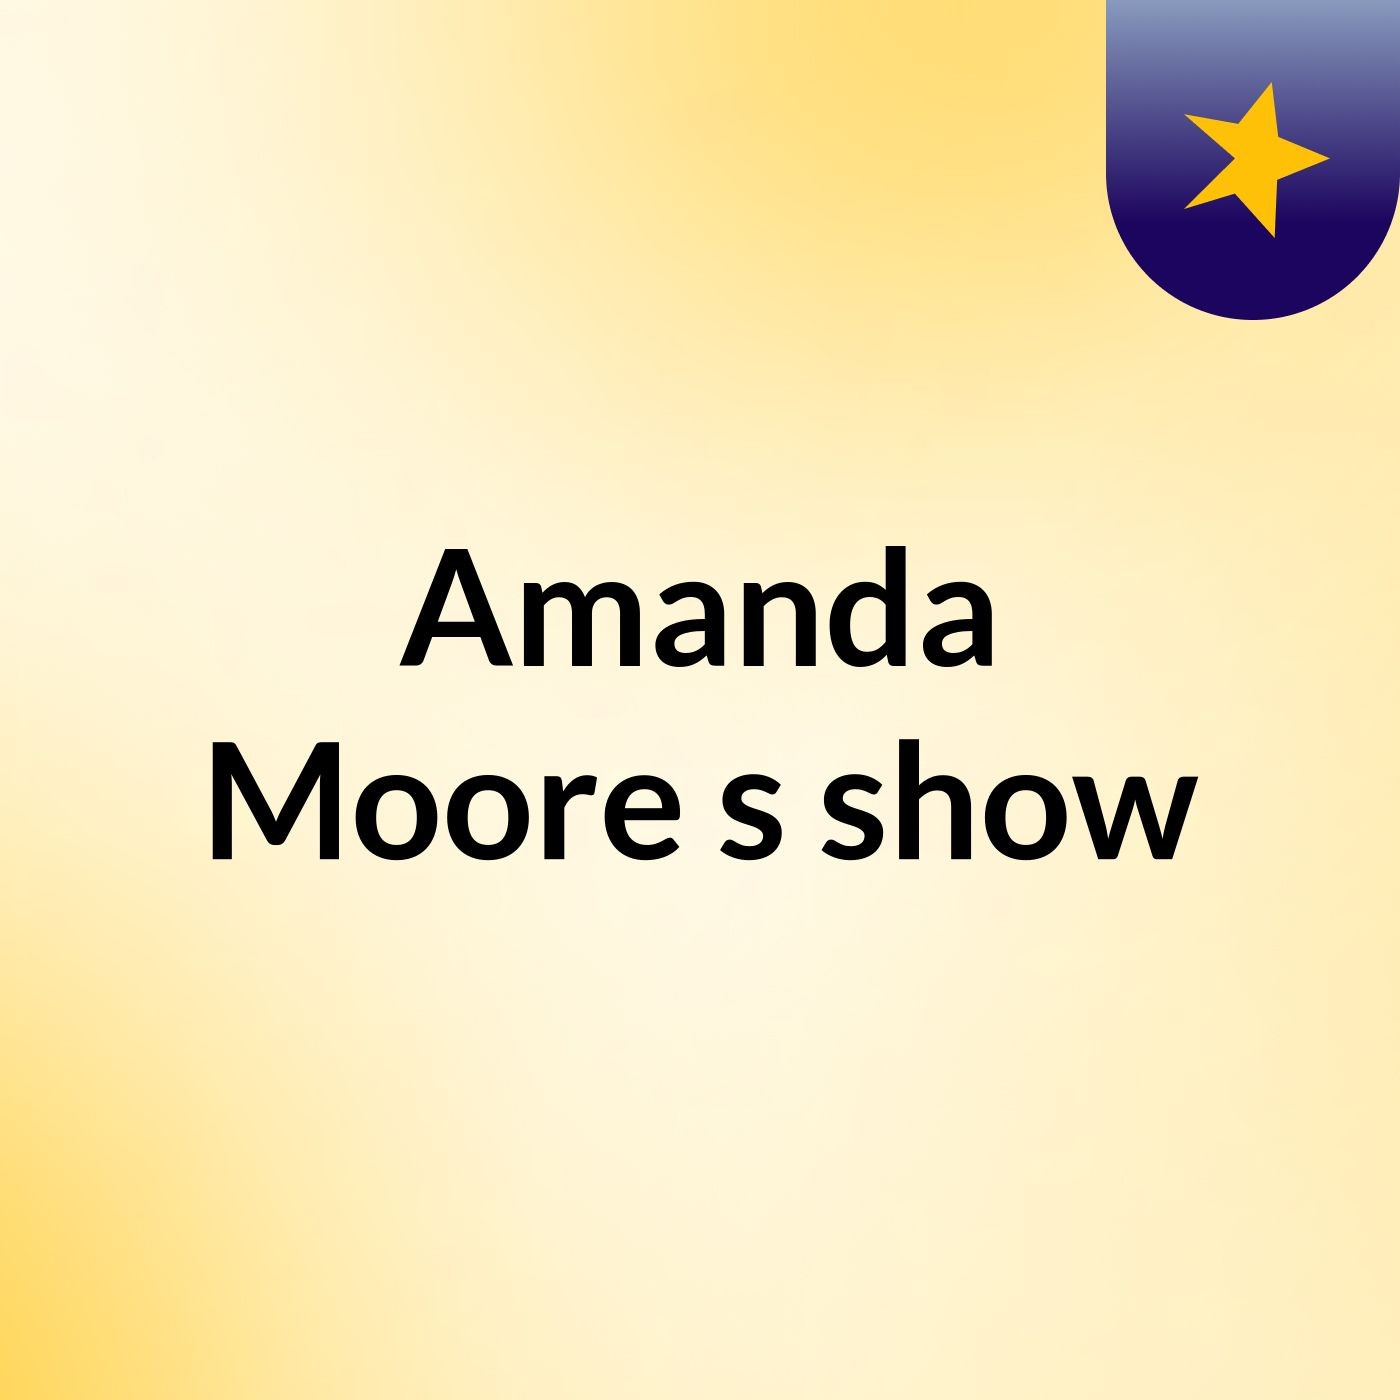 Amanda Moore's show